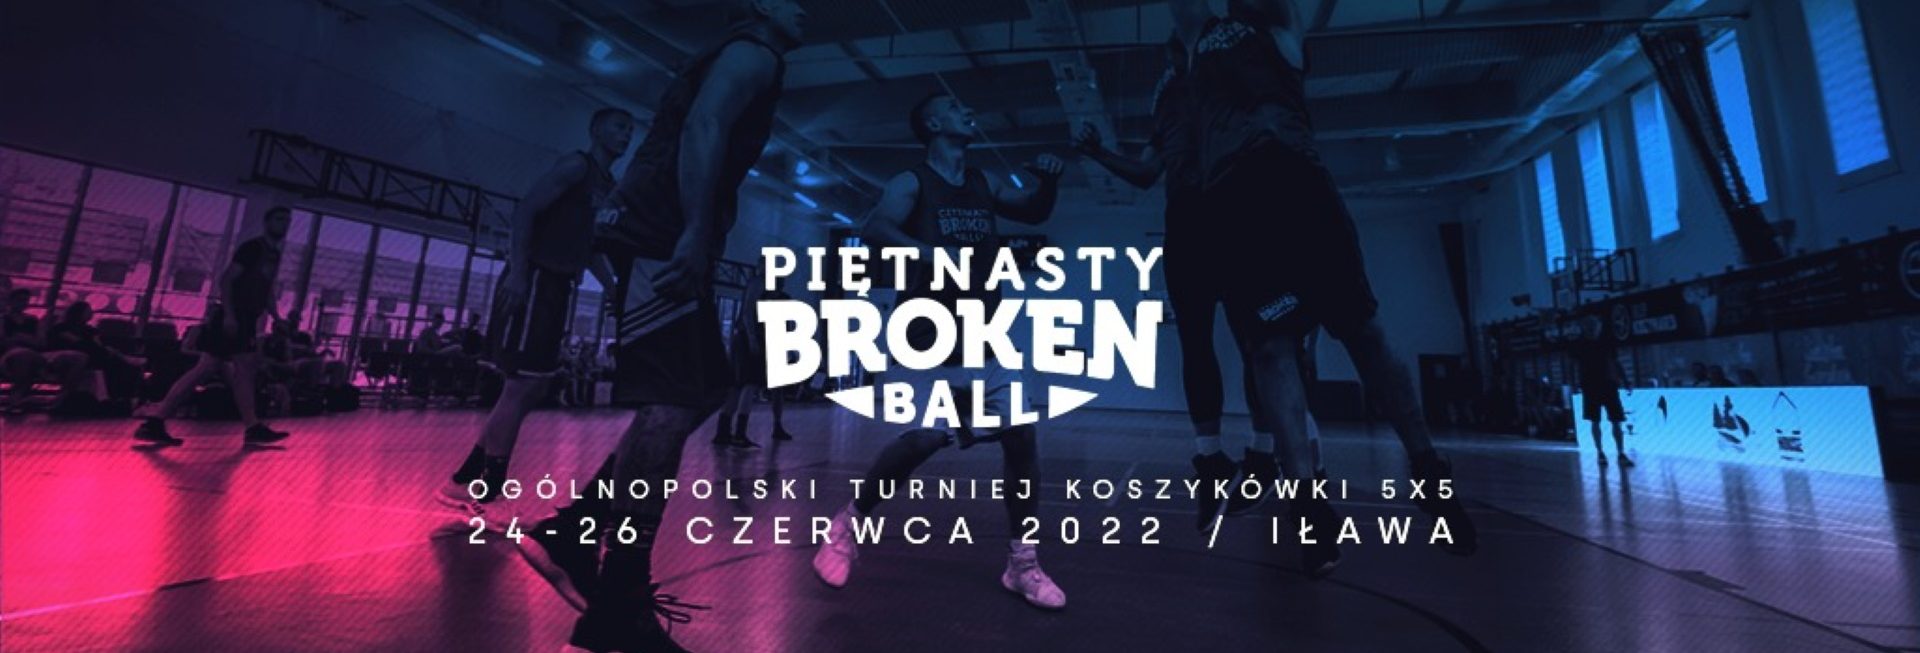 Plakat graficzny zapraszający na cykliczną imprezę 15. edycję Broken Ball Ogólnopolskiego Turnieju Koszykówki 5x5 Iława 2022.